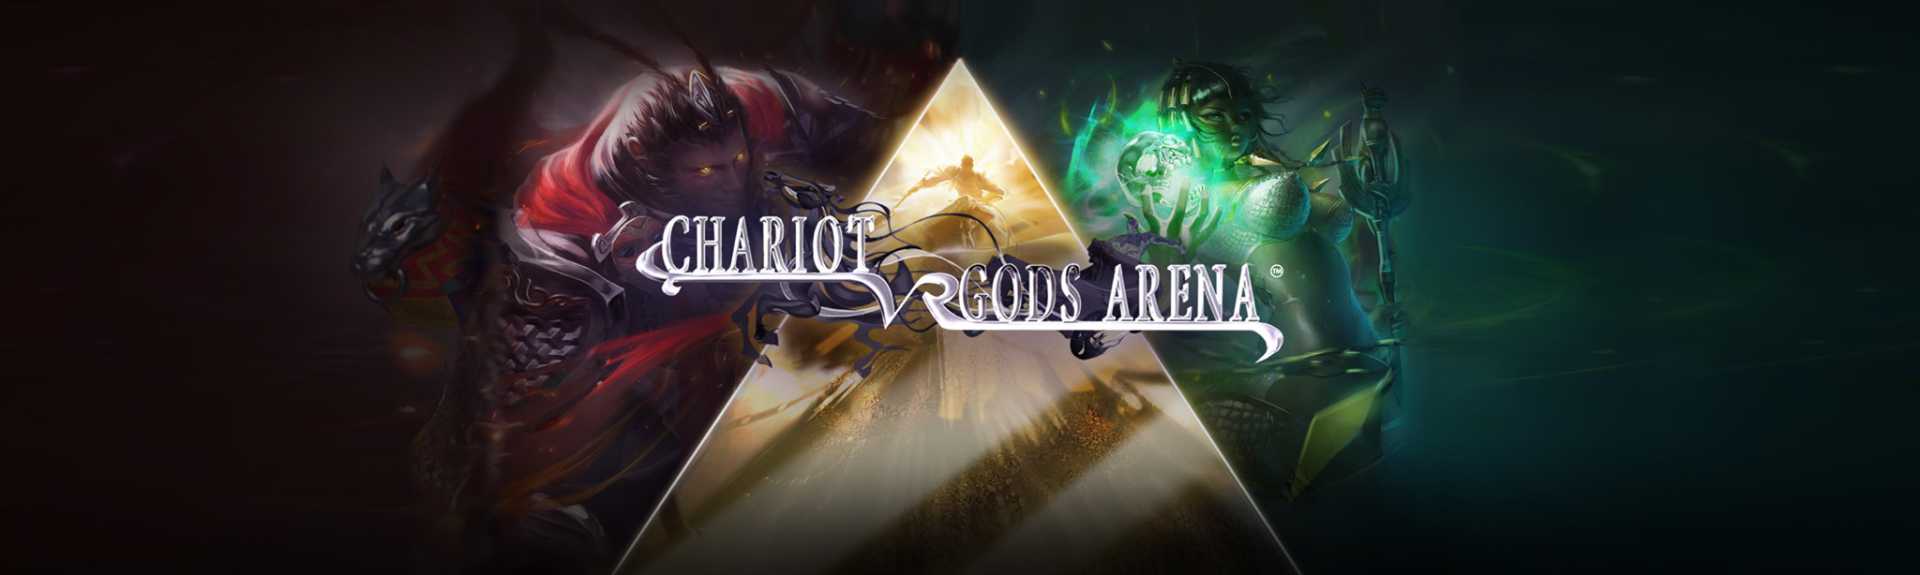 Chariot - Gods Arena